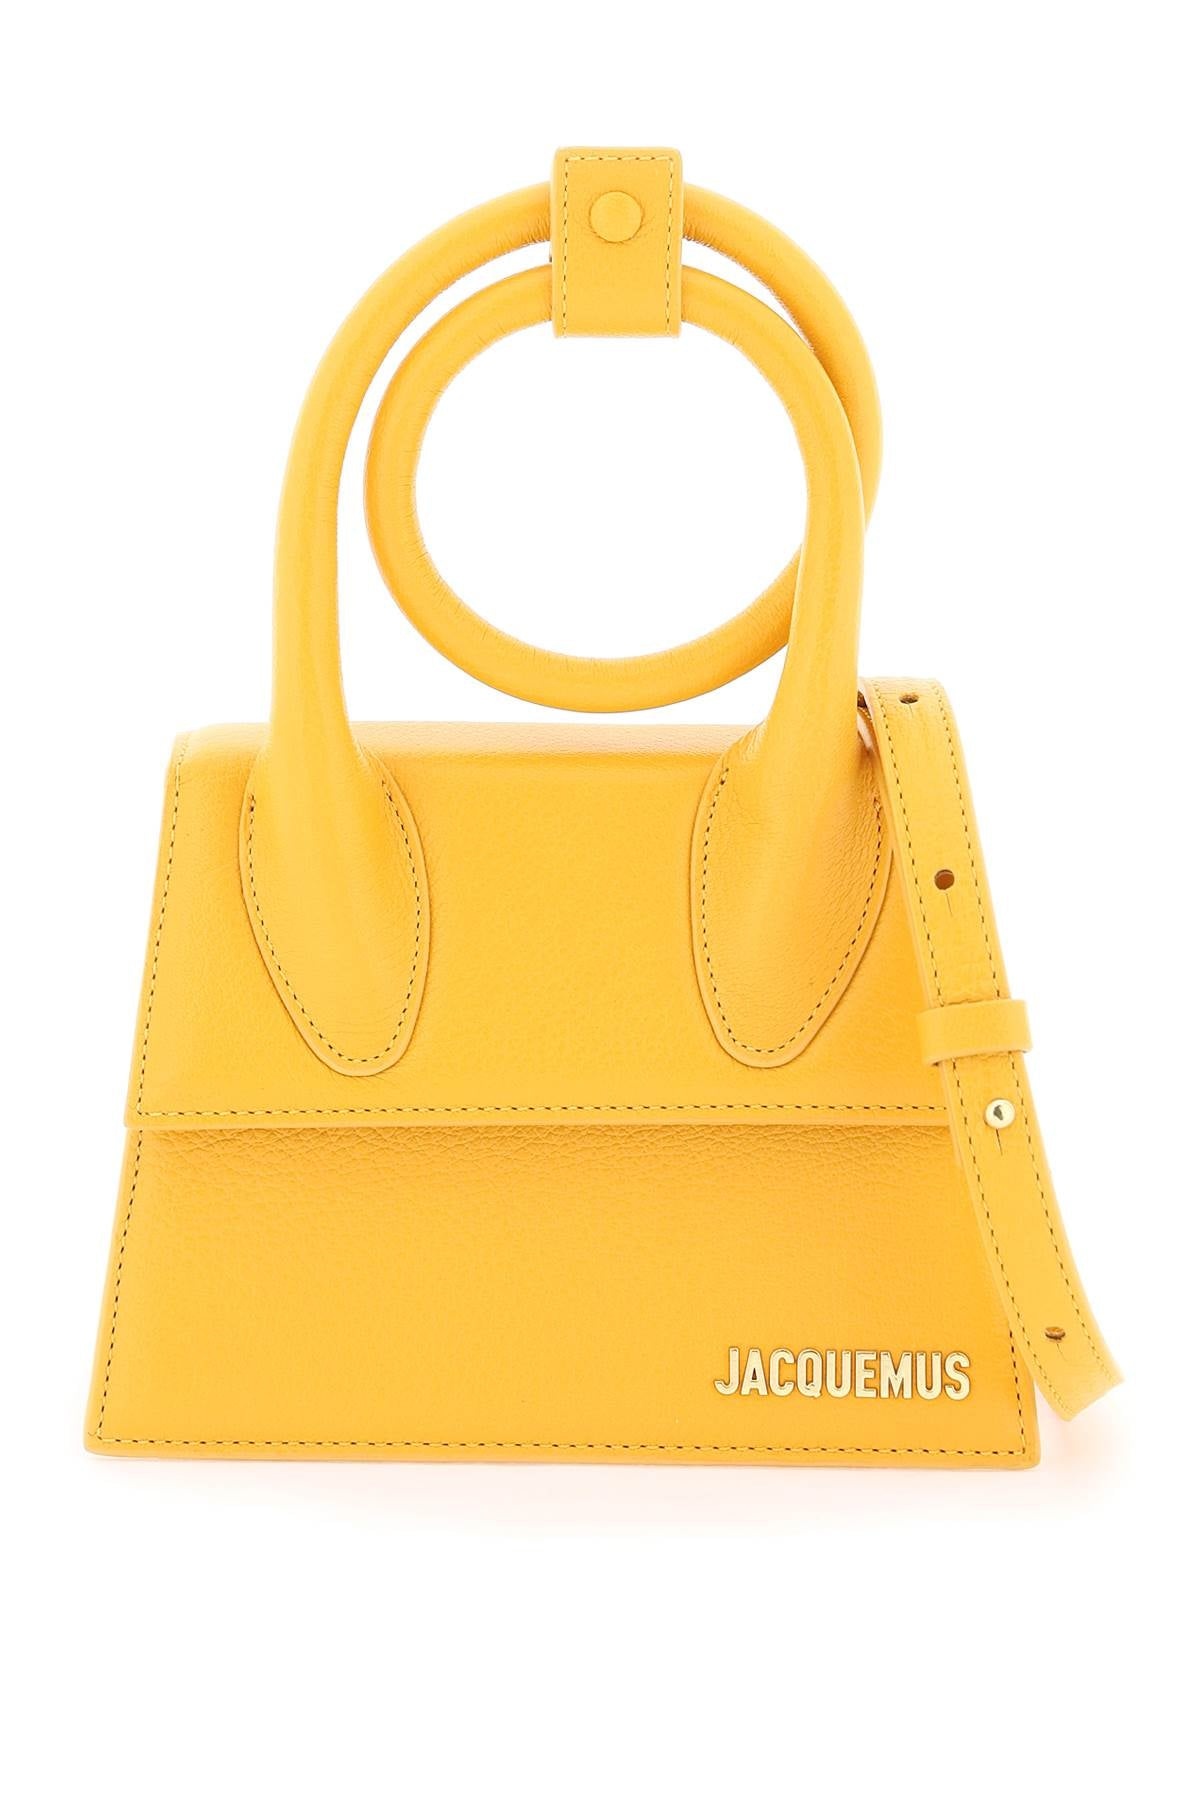 Jacquemus Le Chiquito Noeud Bag Women - 1